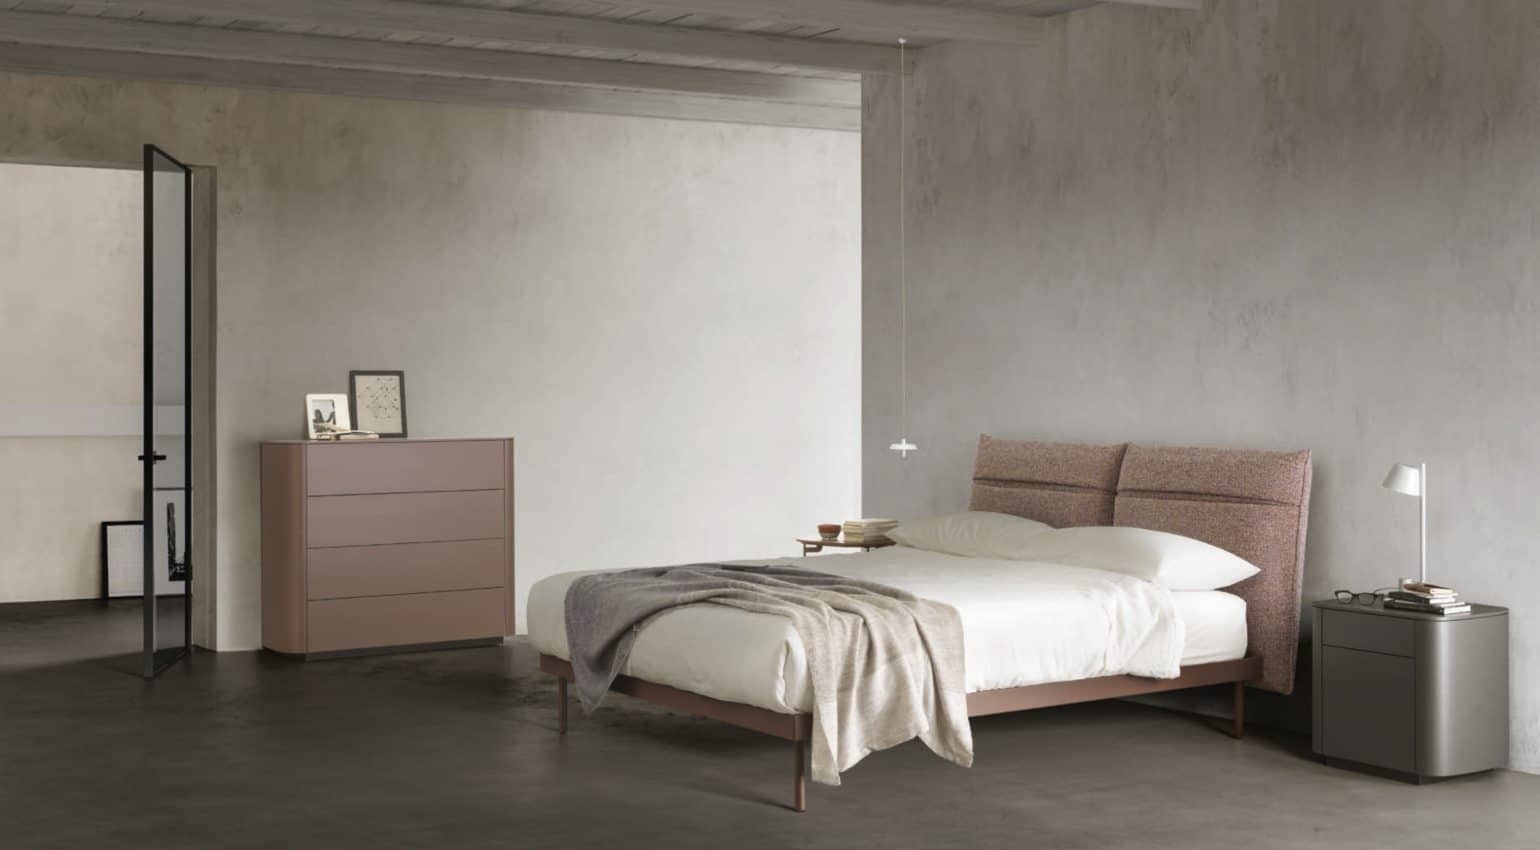 Minimalista habitación de diseño italiano con una funcional cama con compartimentos en el cabecero y un aparador realizando la función de mesita de noche